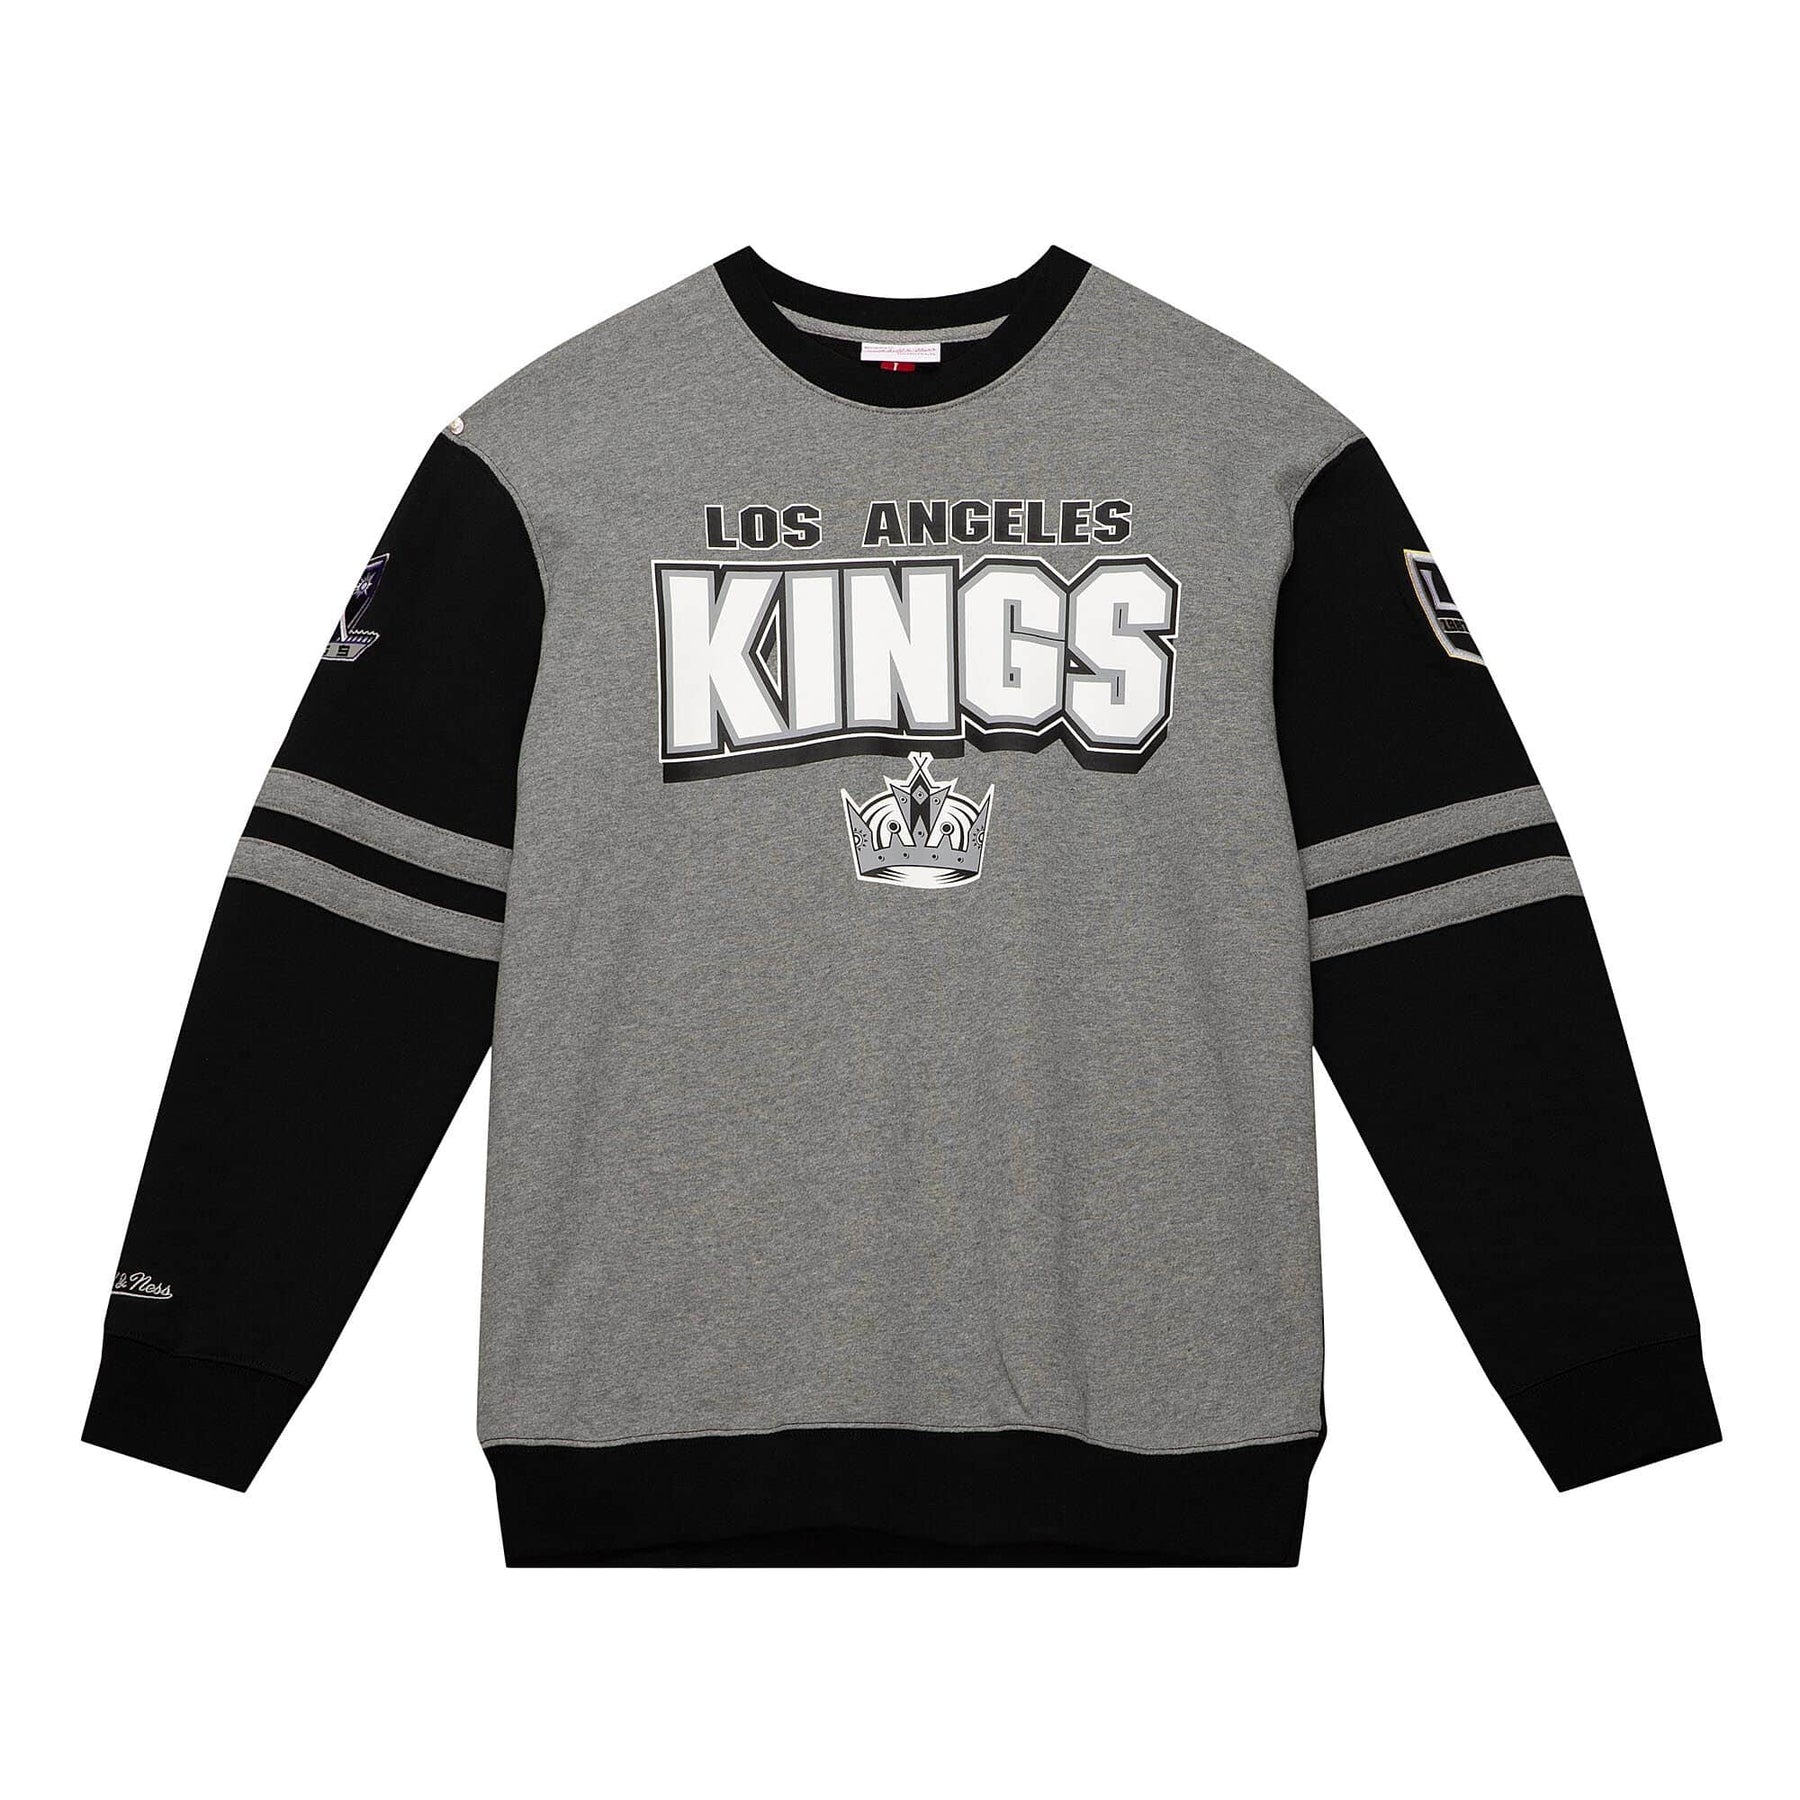 Los angeles kings sweatshirt - Gem